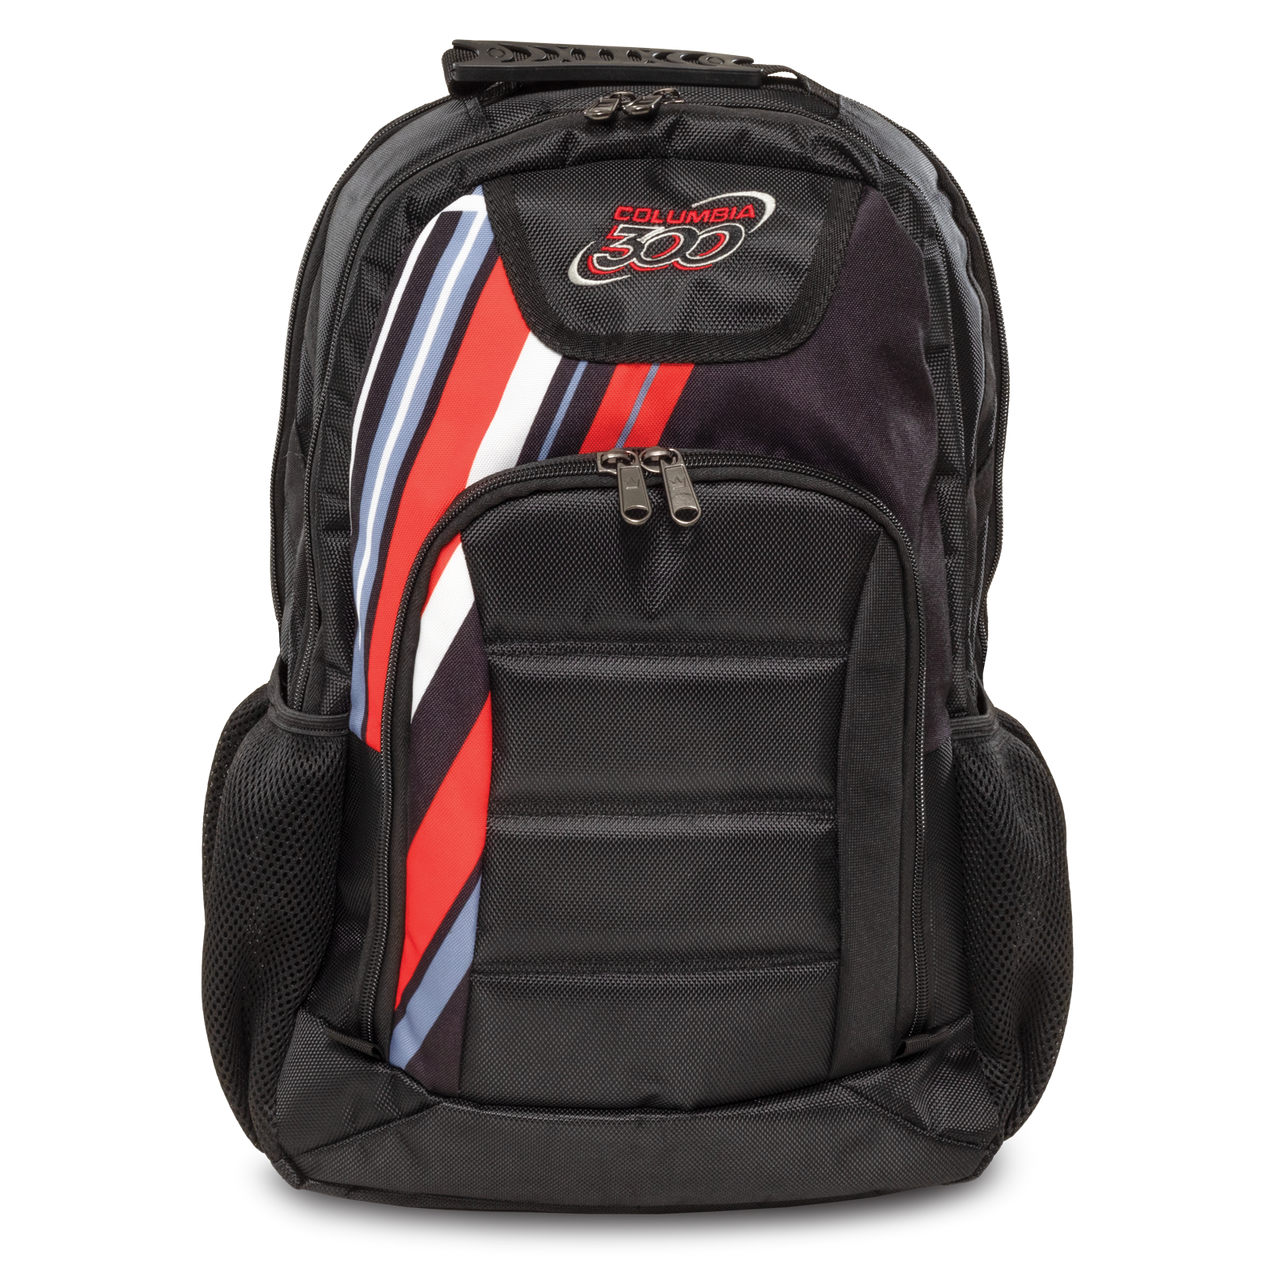 Columbia 300 C300 Dye-Sub Backpack Black